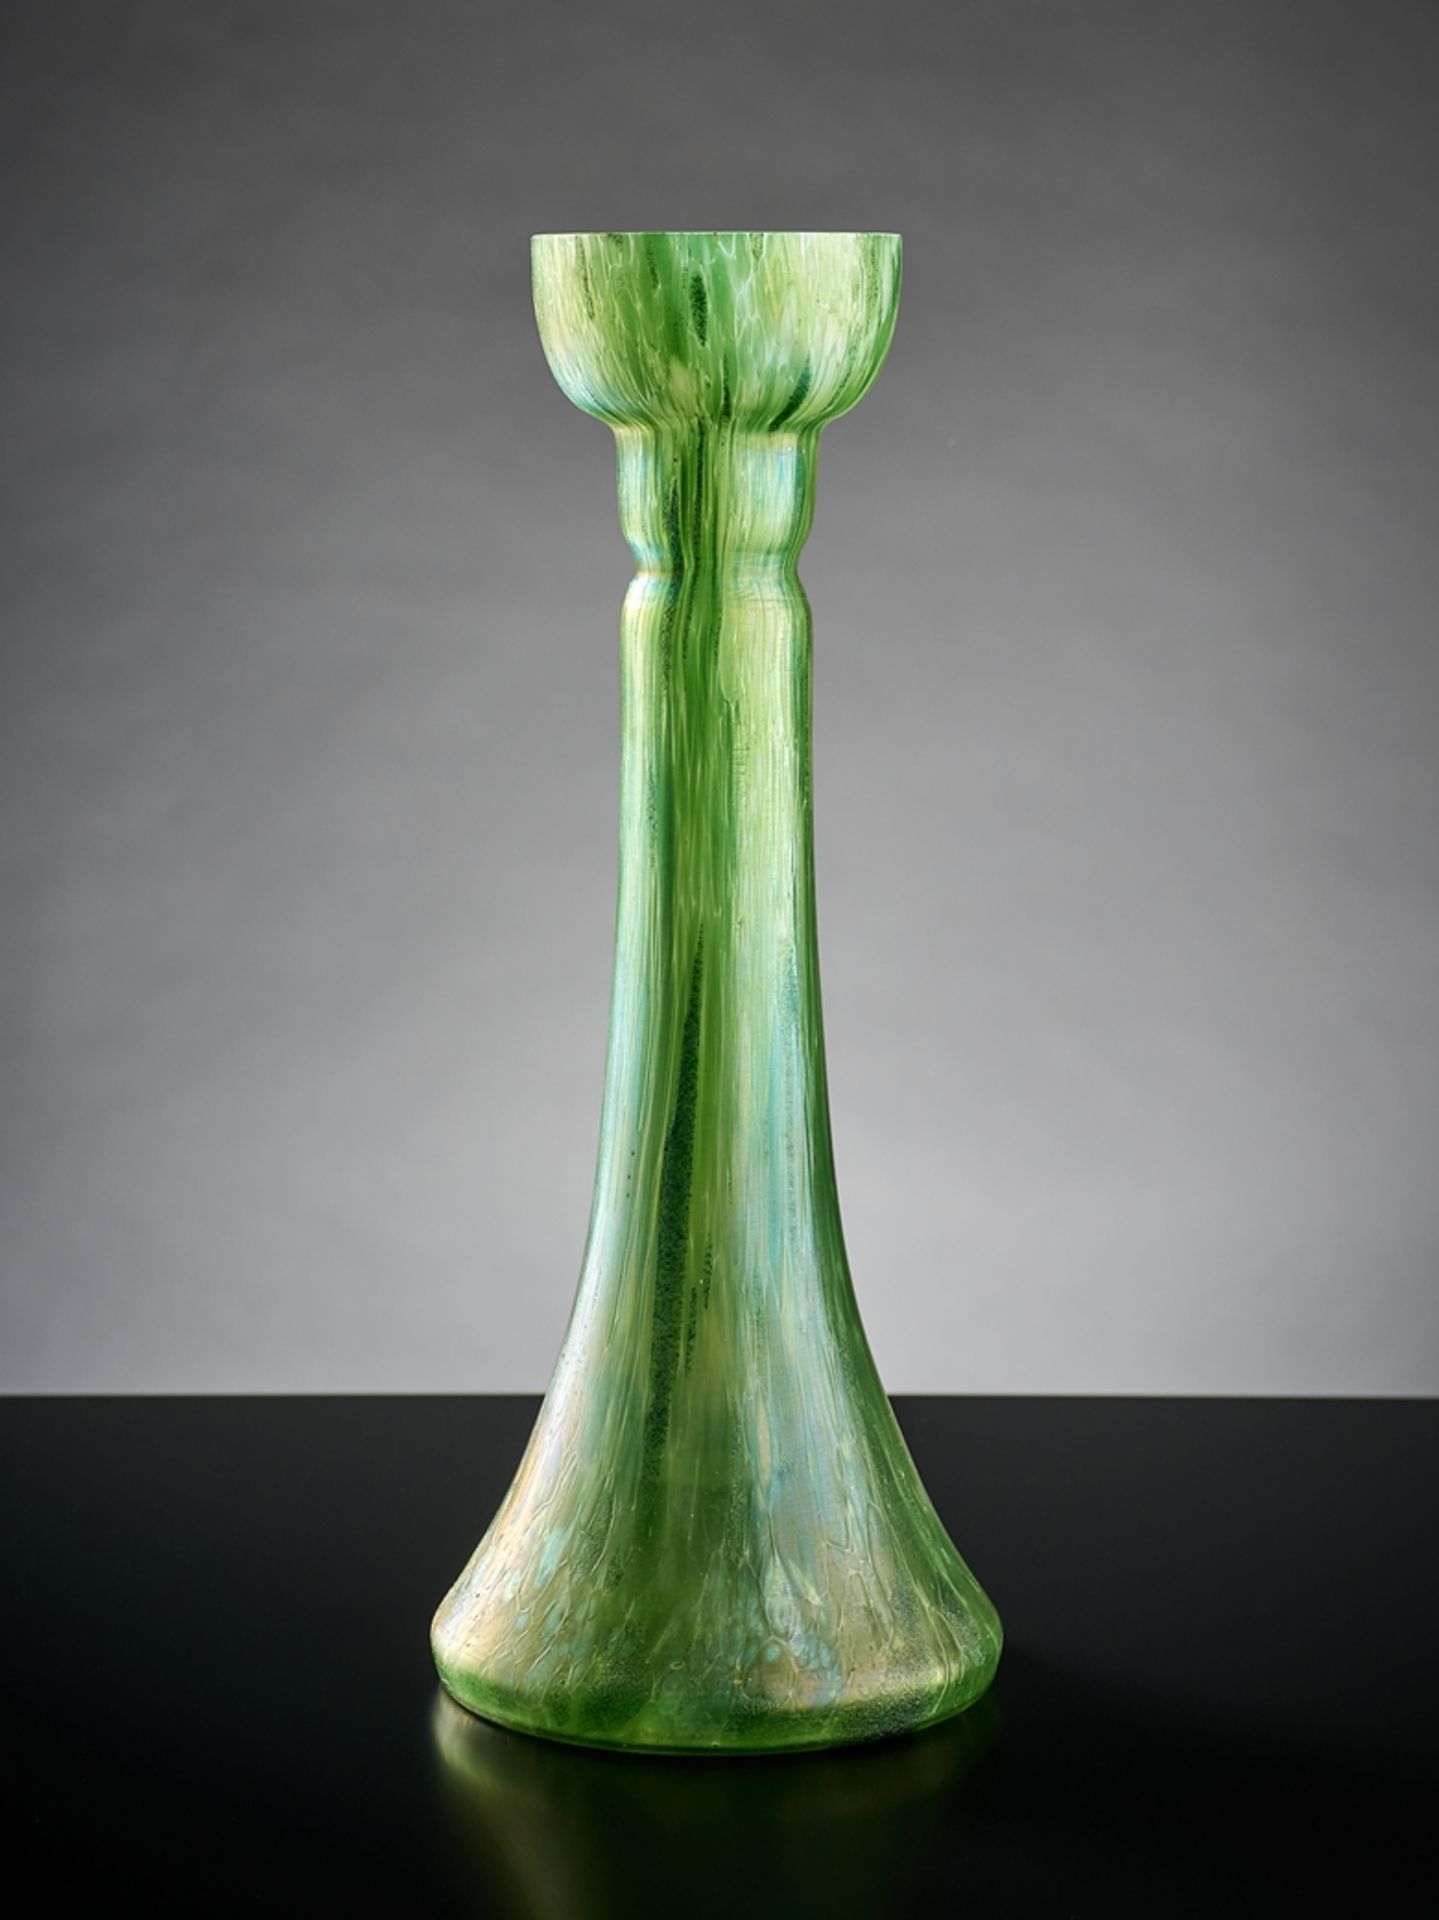 Schlanke Vase. Unterfangen. Streifig ausgezogene, grüne Aufschmelzungen. Böhmen, um 1900. H 34 cm